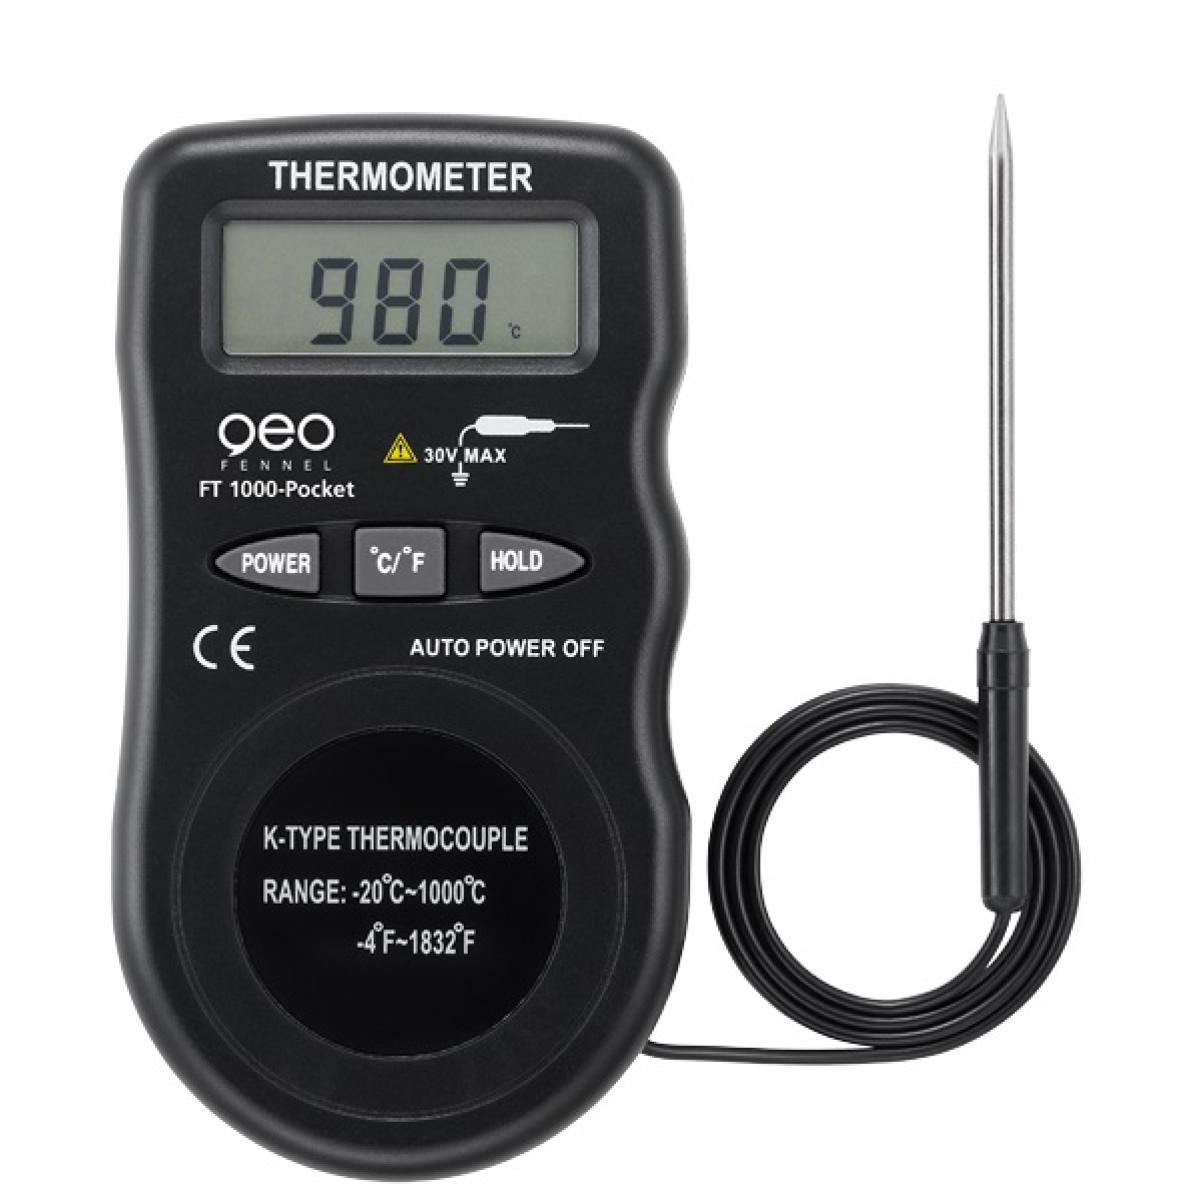 Geo Fennel Gmbh - Geo Fennel - Thermomètre digital à sonde haute température - FT 1000-Pocket - Appareils de mesure